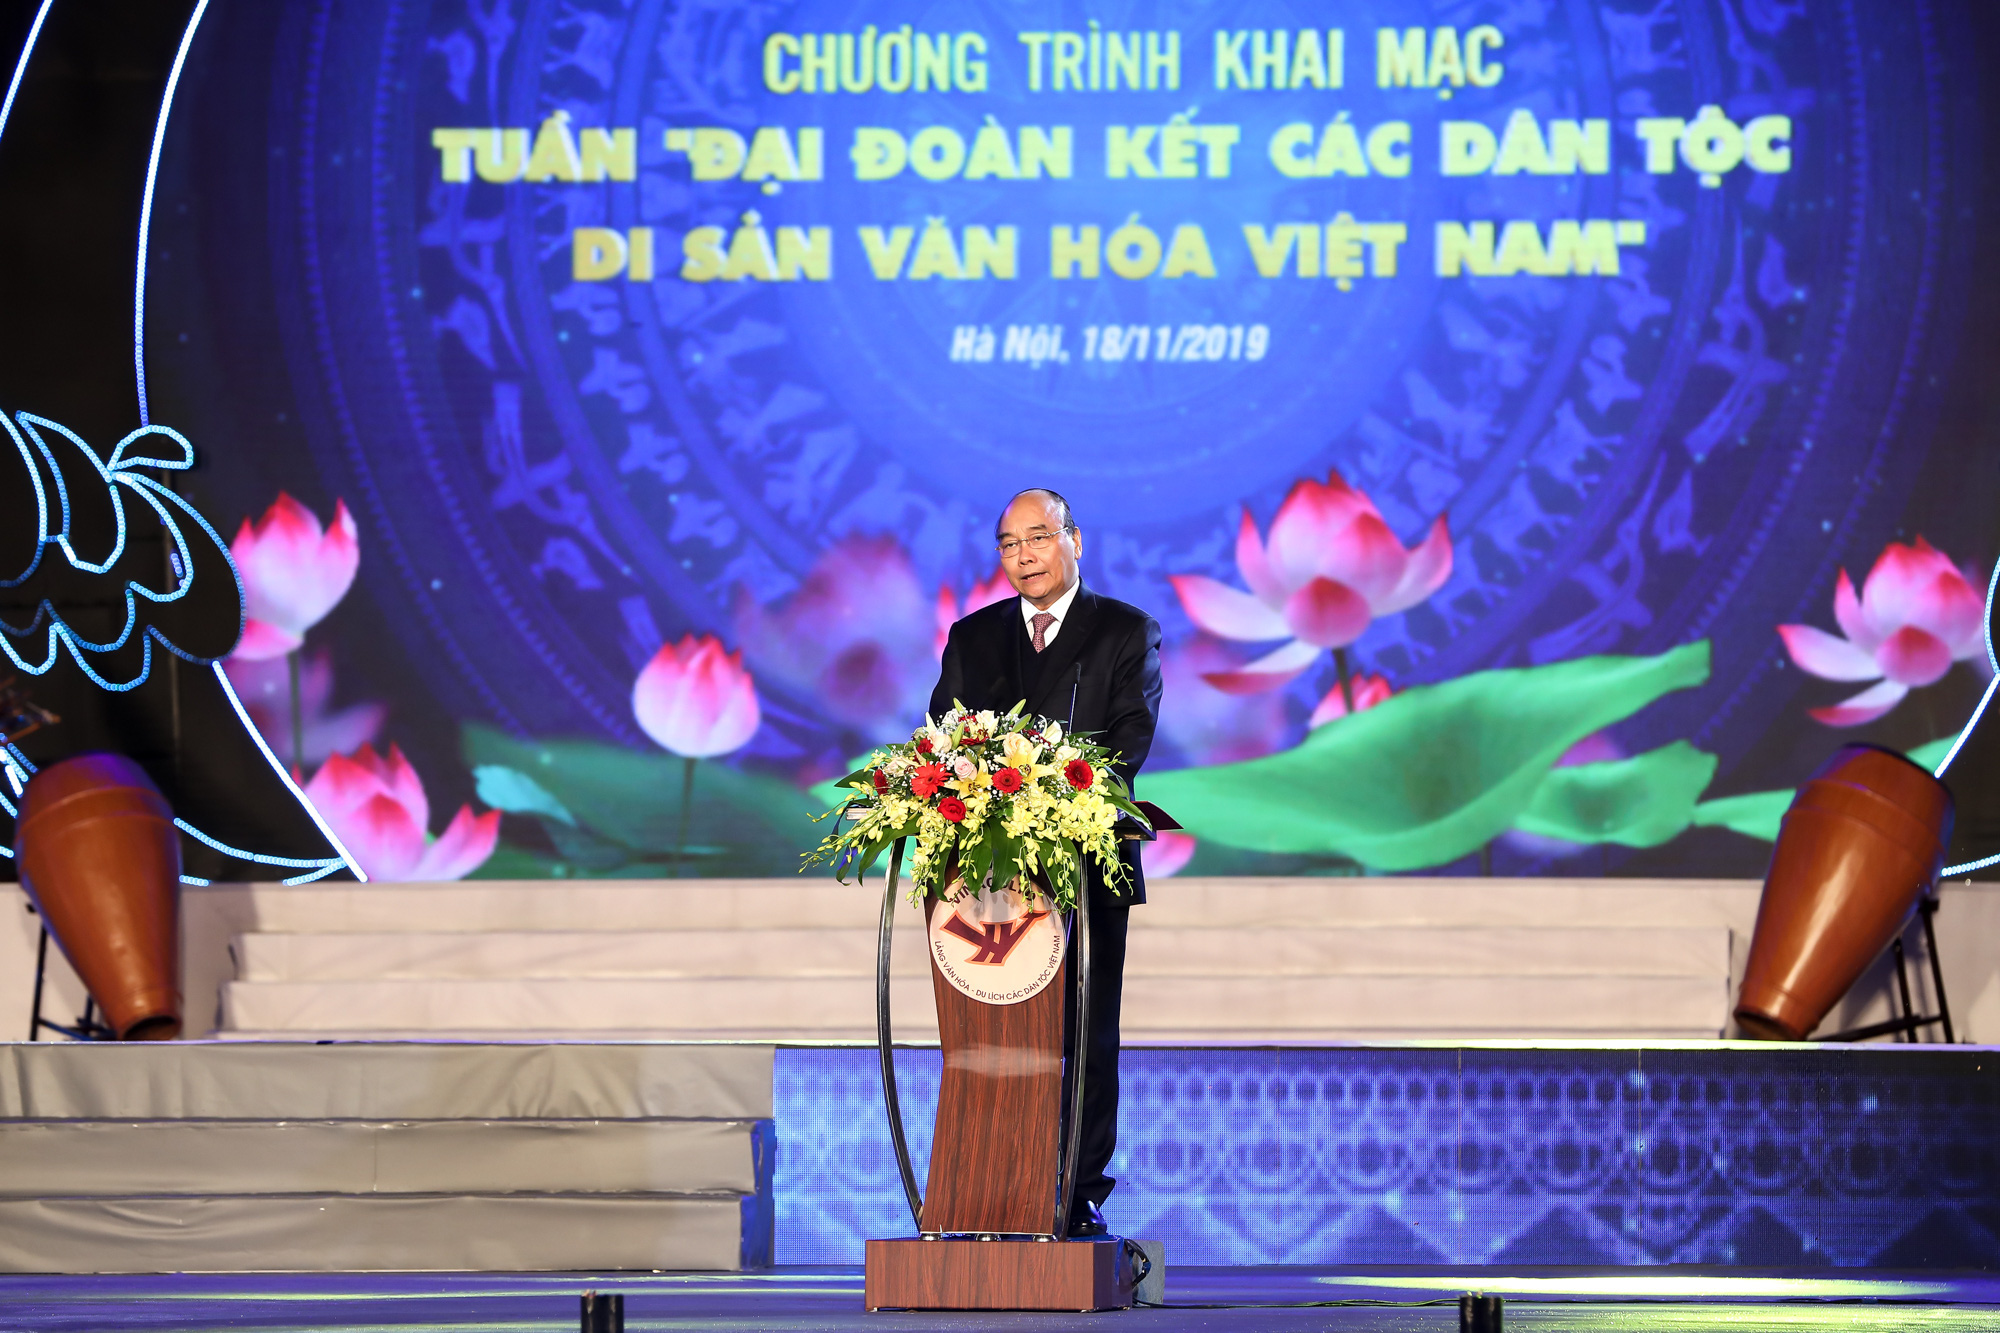 Thủ tướng Nguyễn Xuân Phúc: “Truyền thống đại đoàn kết, trên dưới một lòng đã làm nên sức mạnh vô bờ bến cho dân tộc Việt Nam”